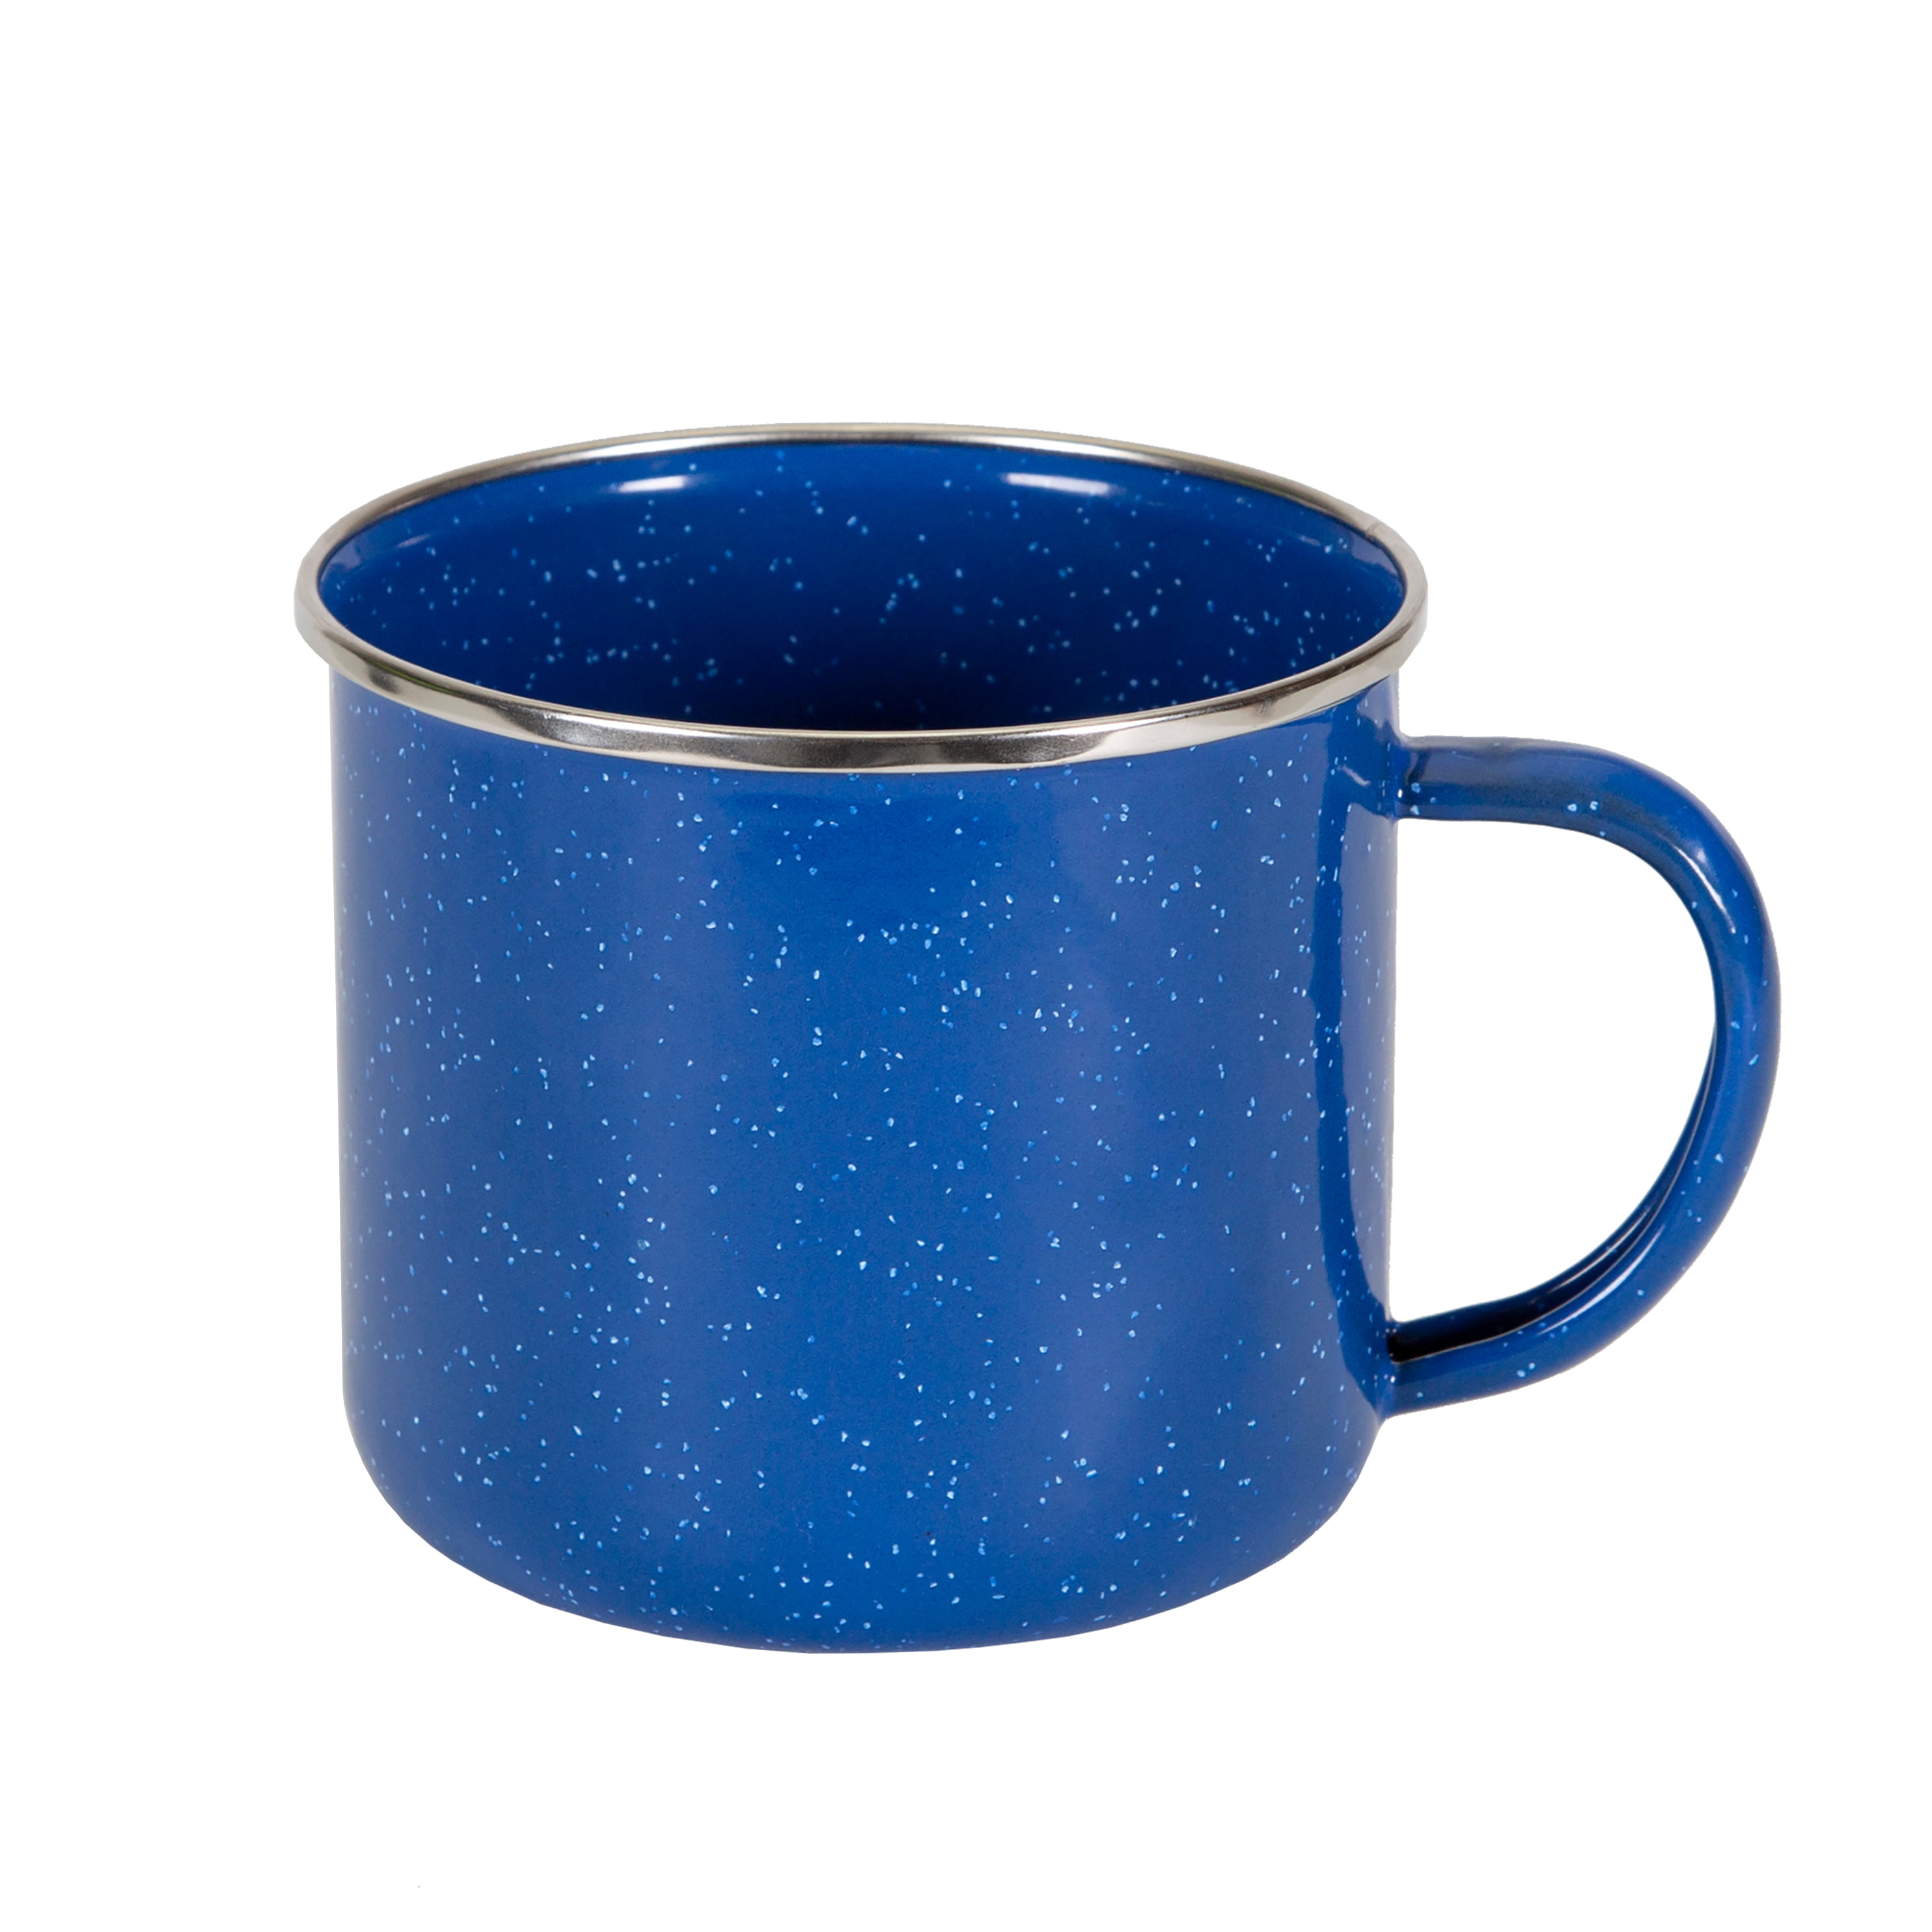 Stansport Enamel Coffee Mug - 22 Oz - Walmart.com ...